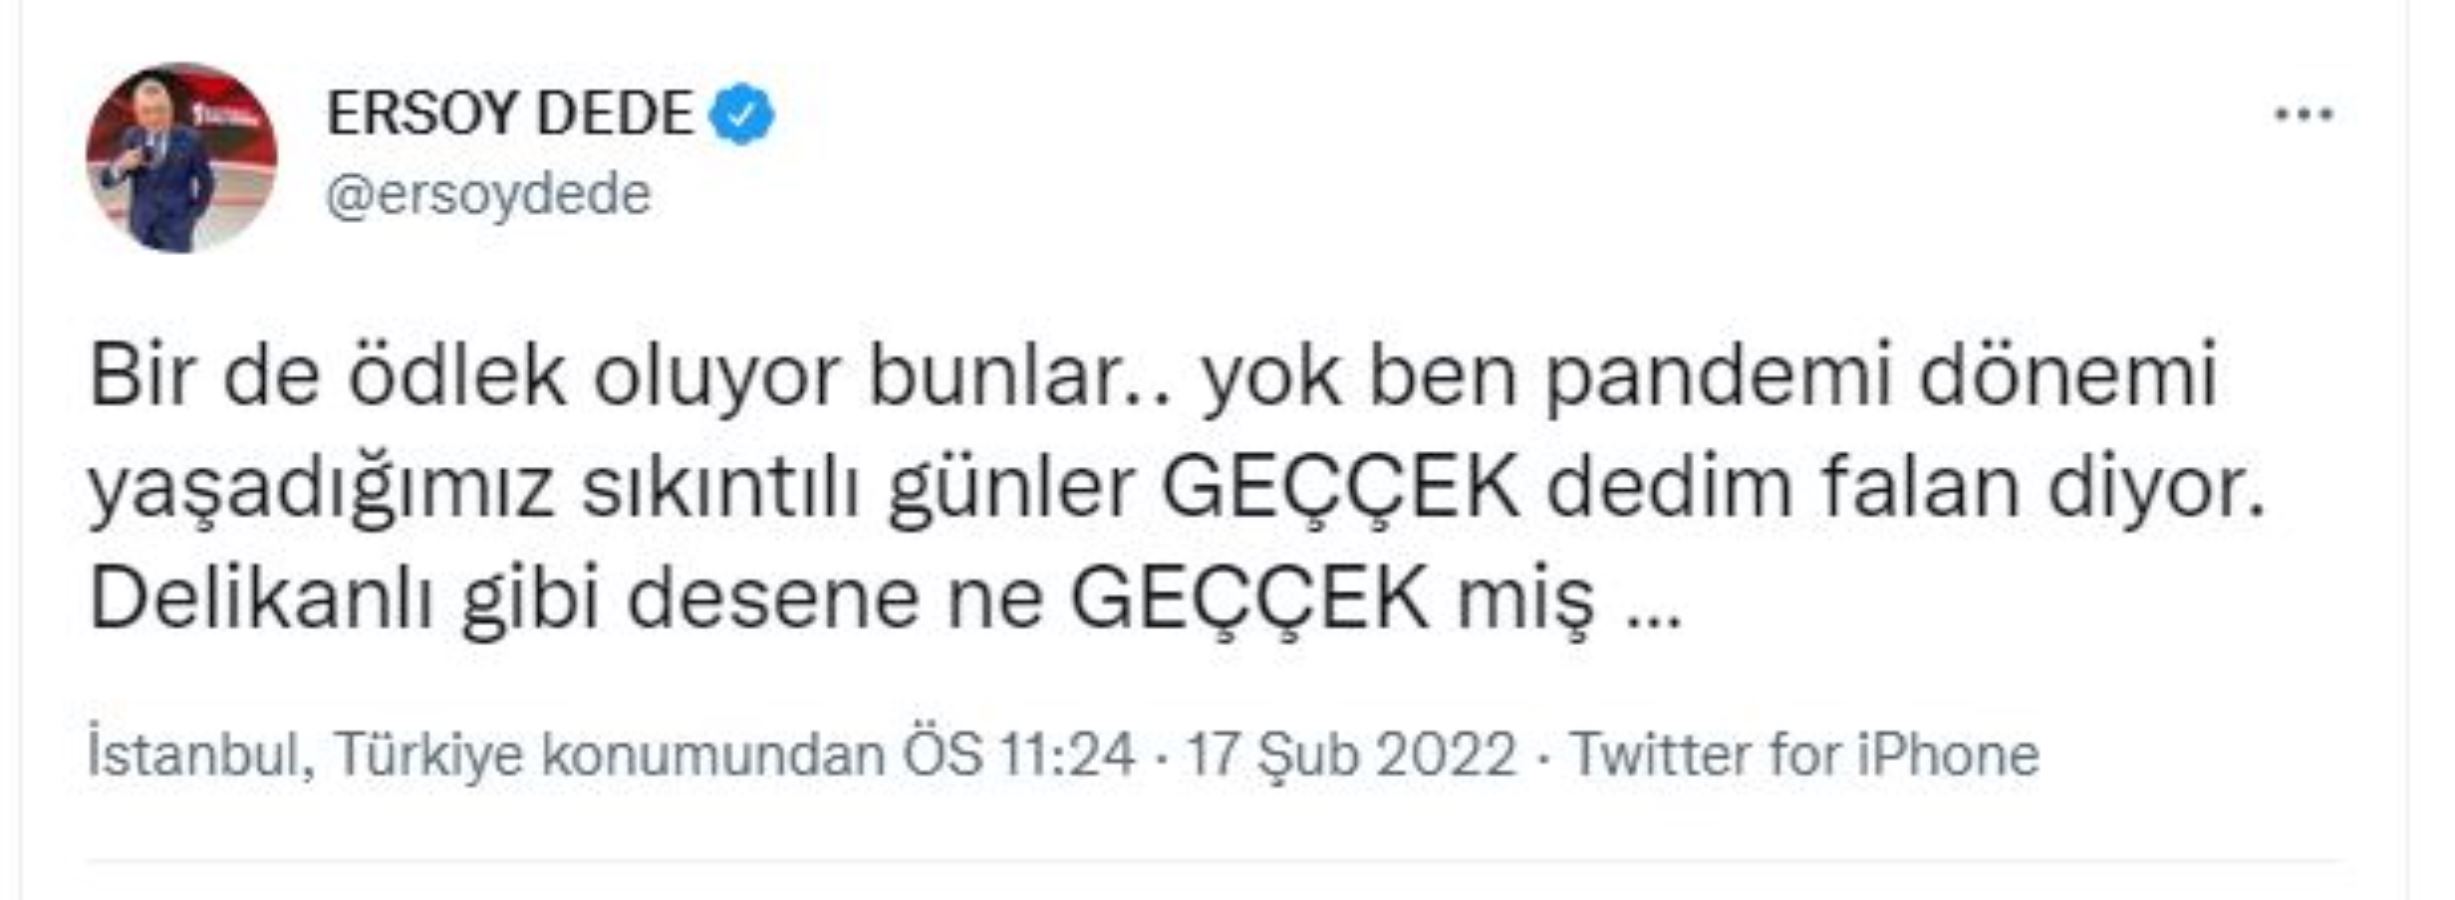 Bilgin Gökberk ve TRT spikeri Ersoy Dede arasında 'Geççek' tartışması: 'Bendeki CV senin Nebati'de yok'